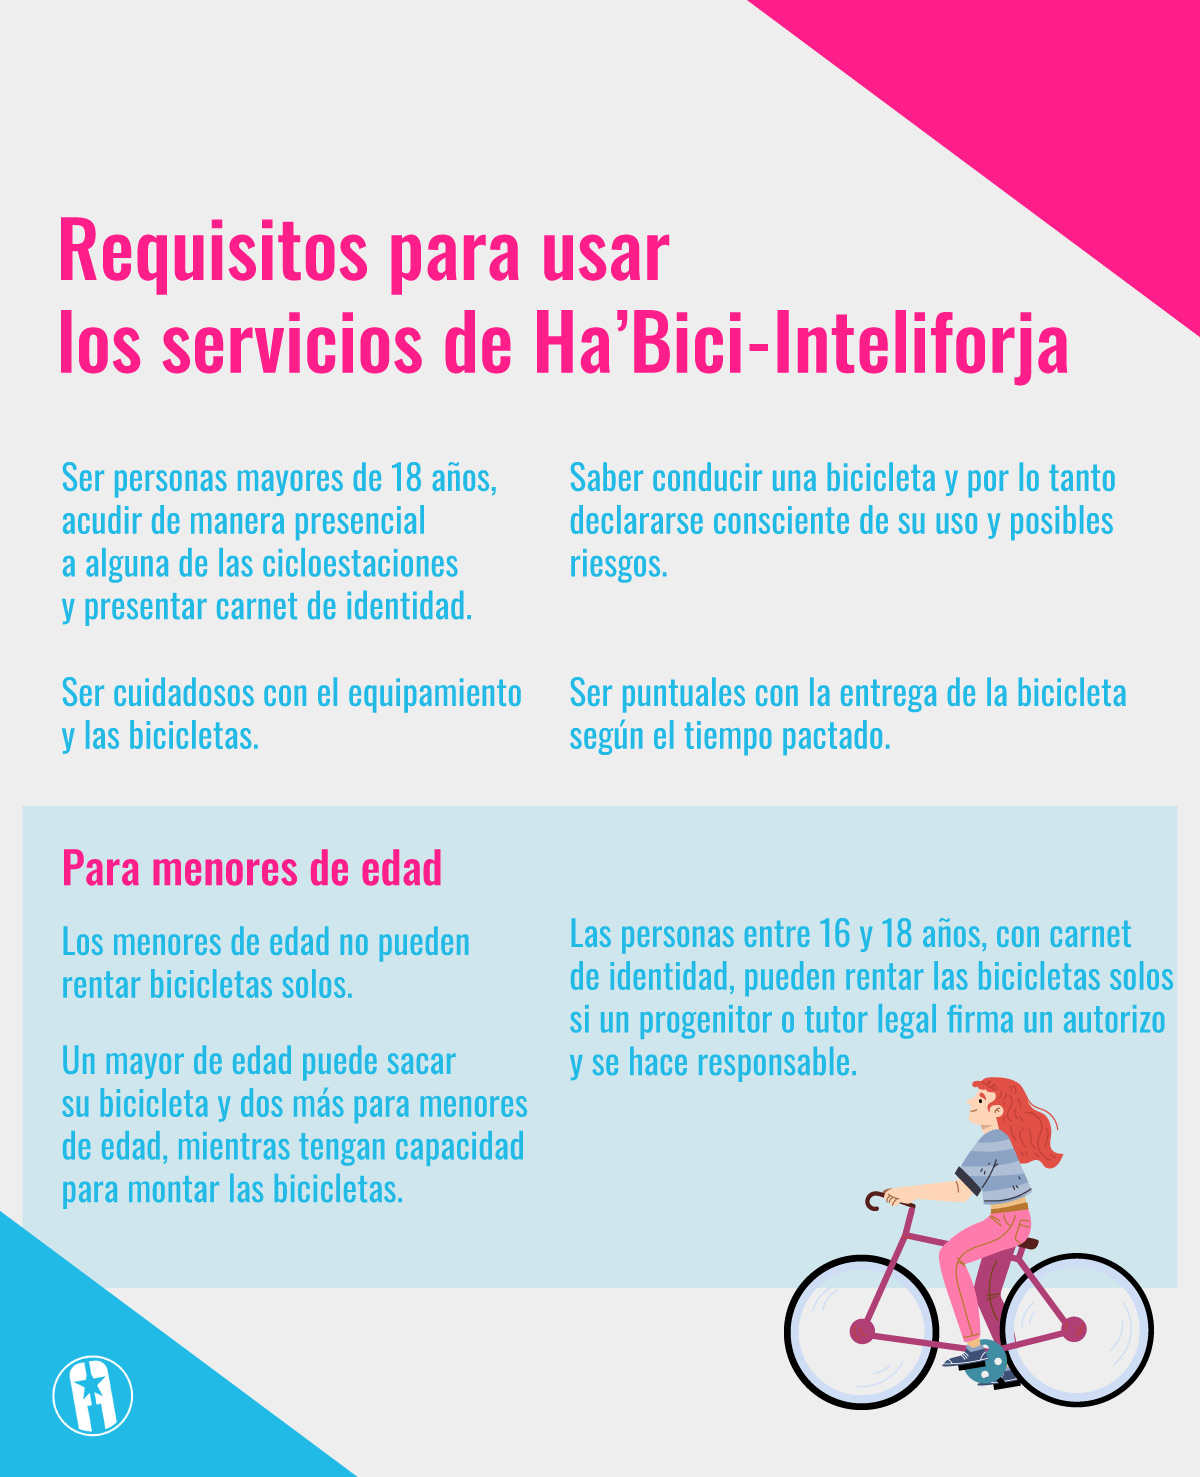 Requisitos para rentar bicicleta en Ha'Bici